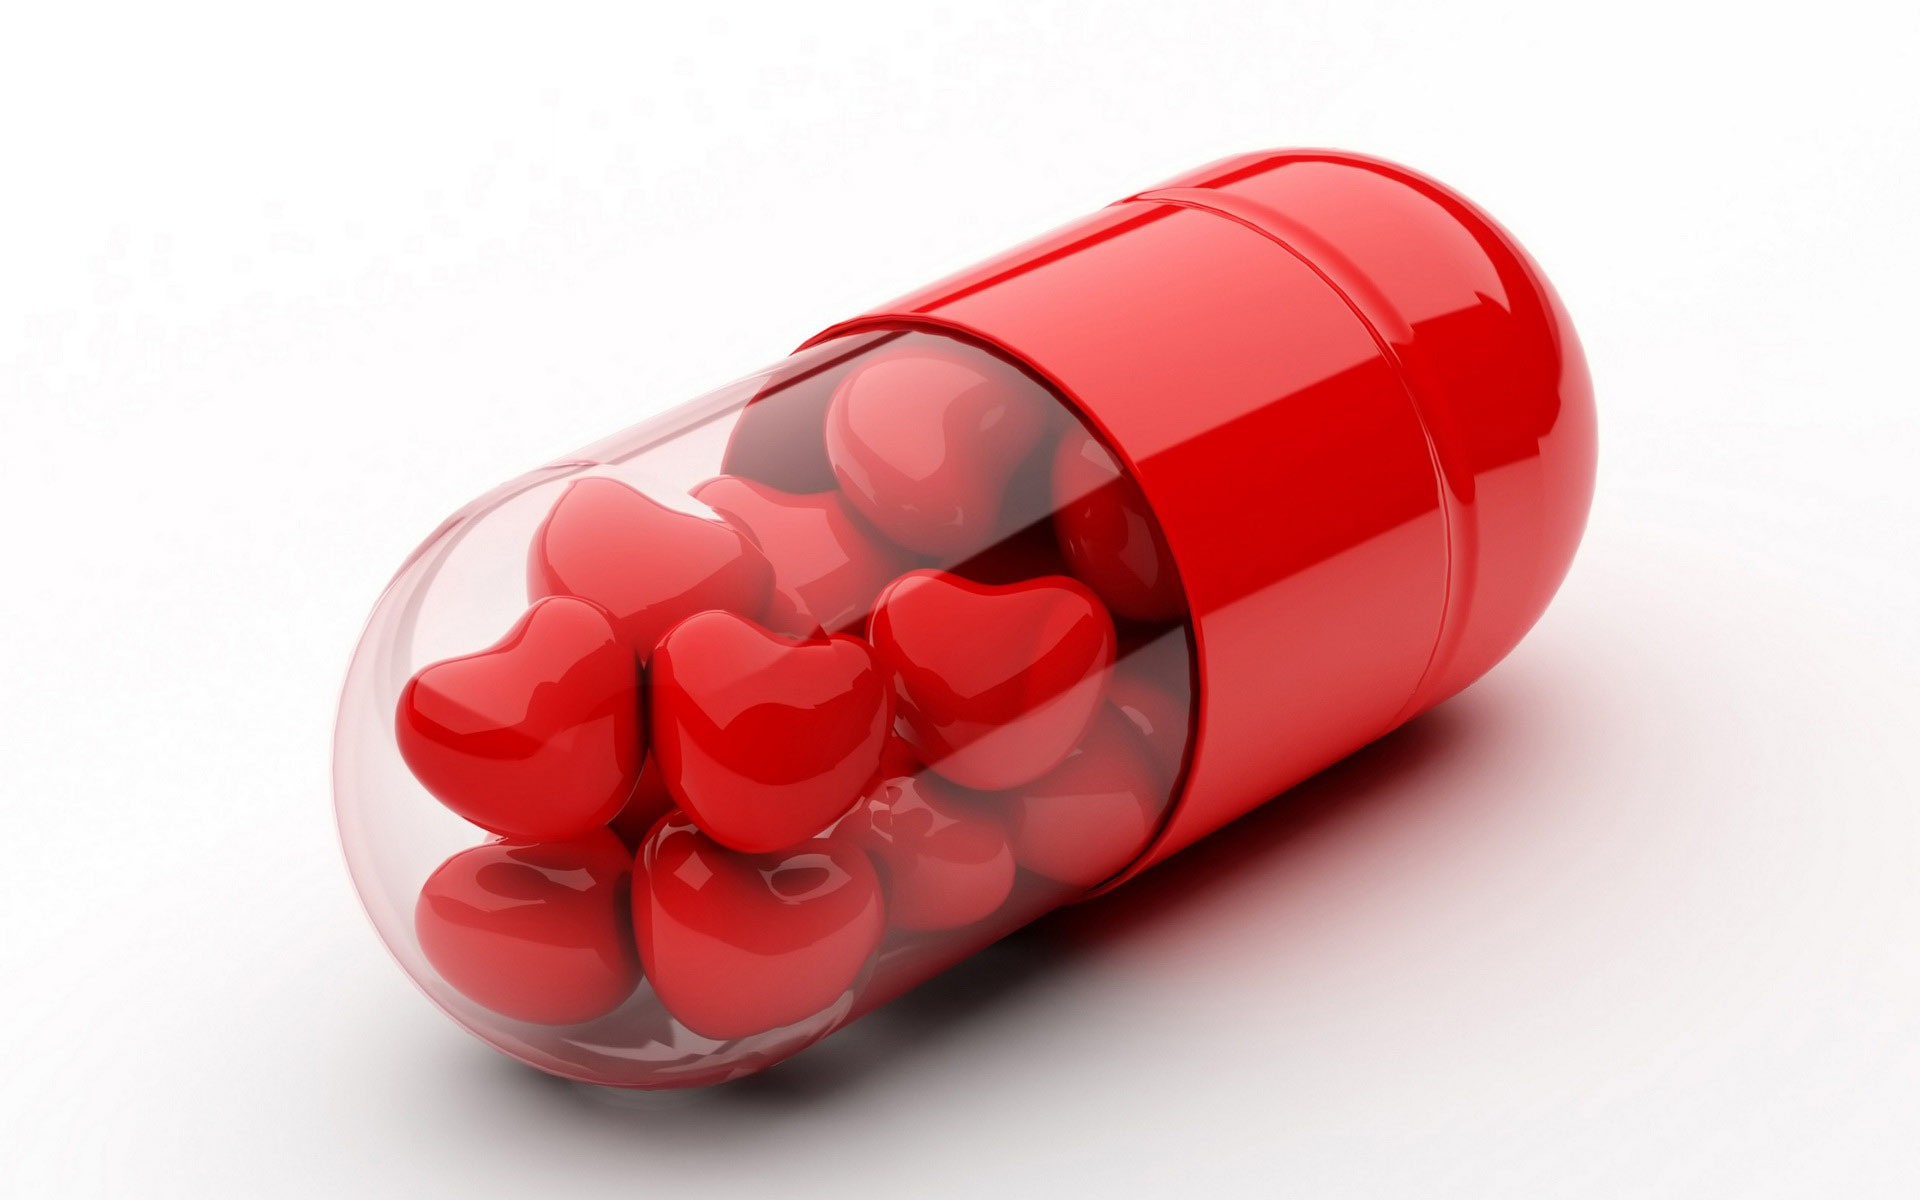 készítmények diabétesz kezelésére a tabletták